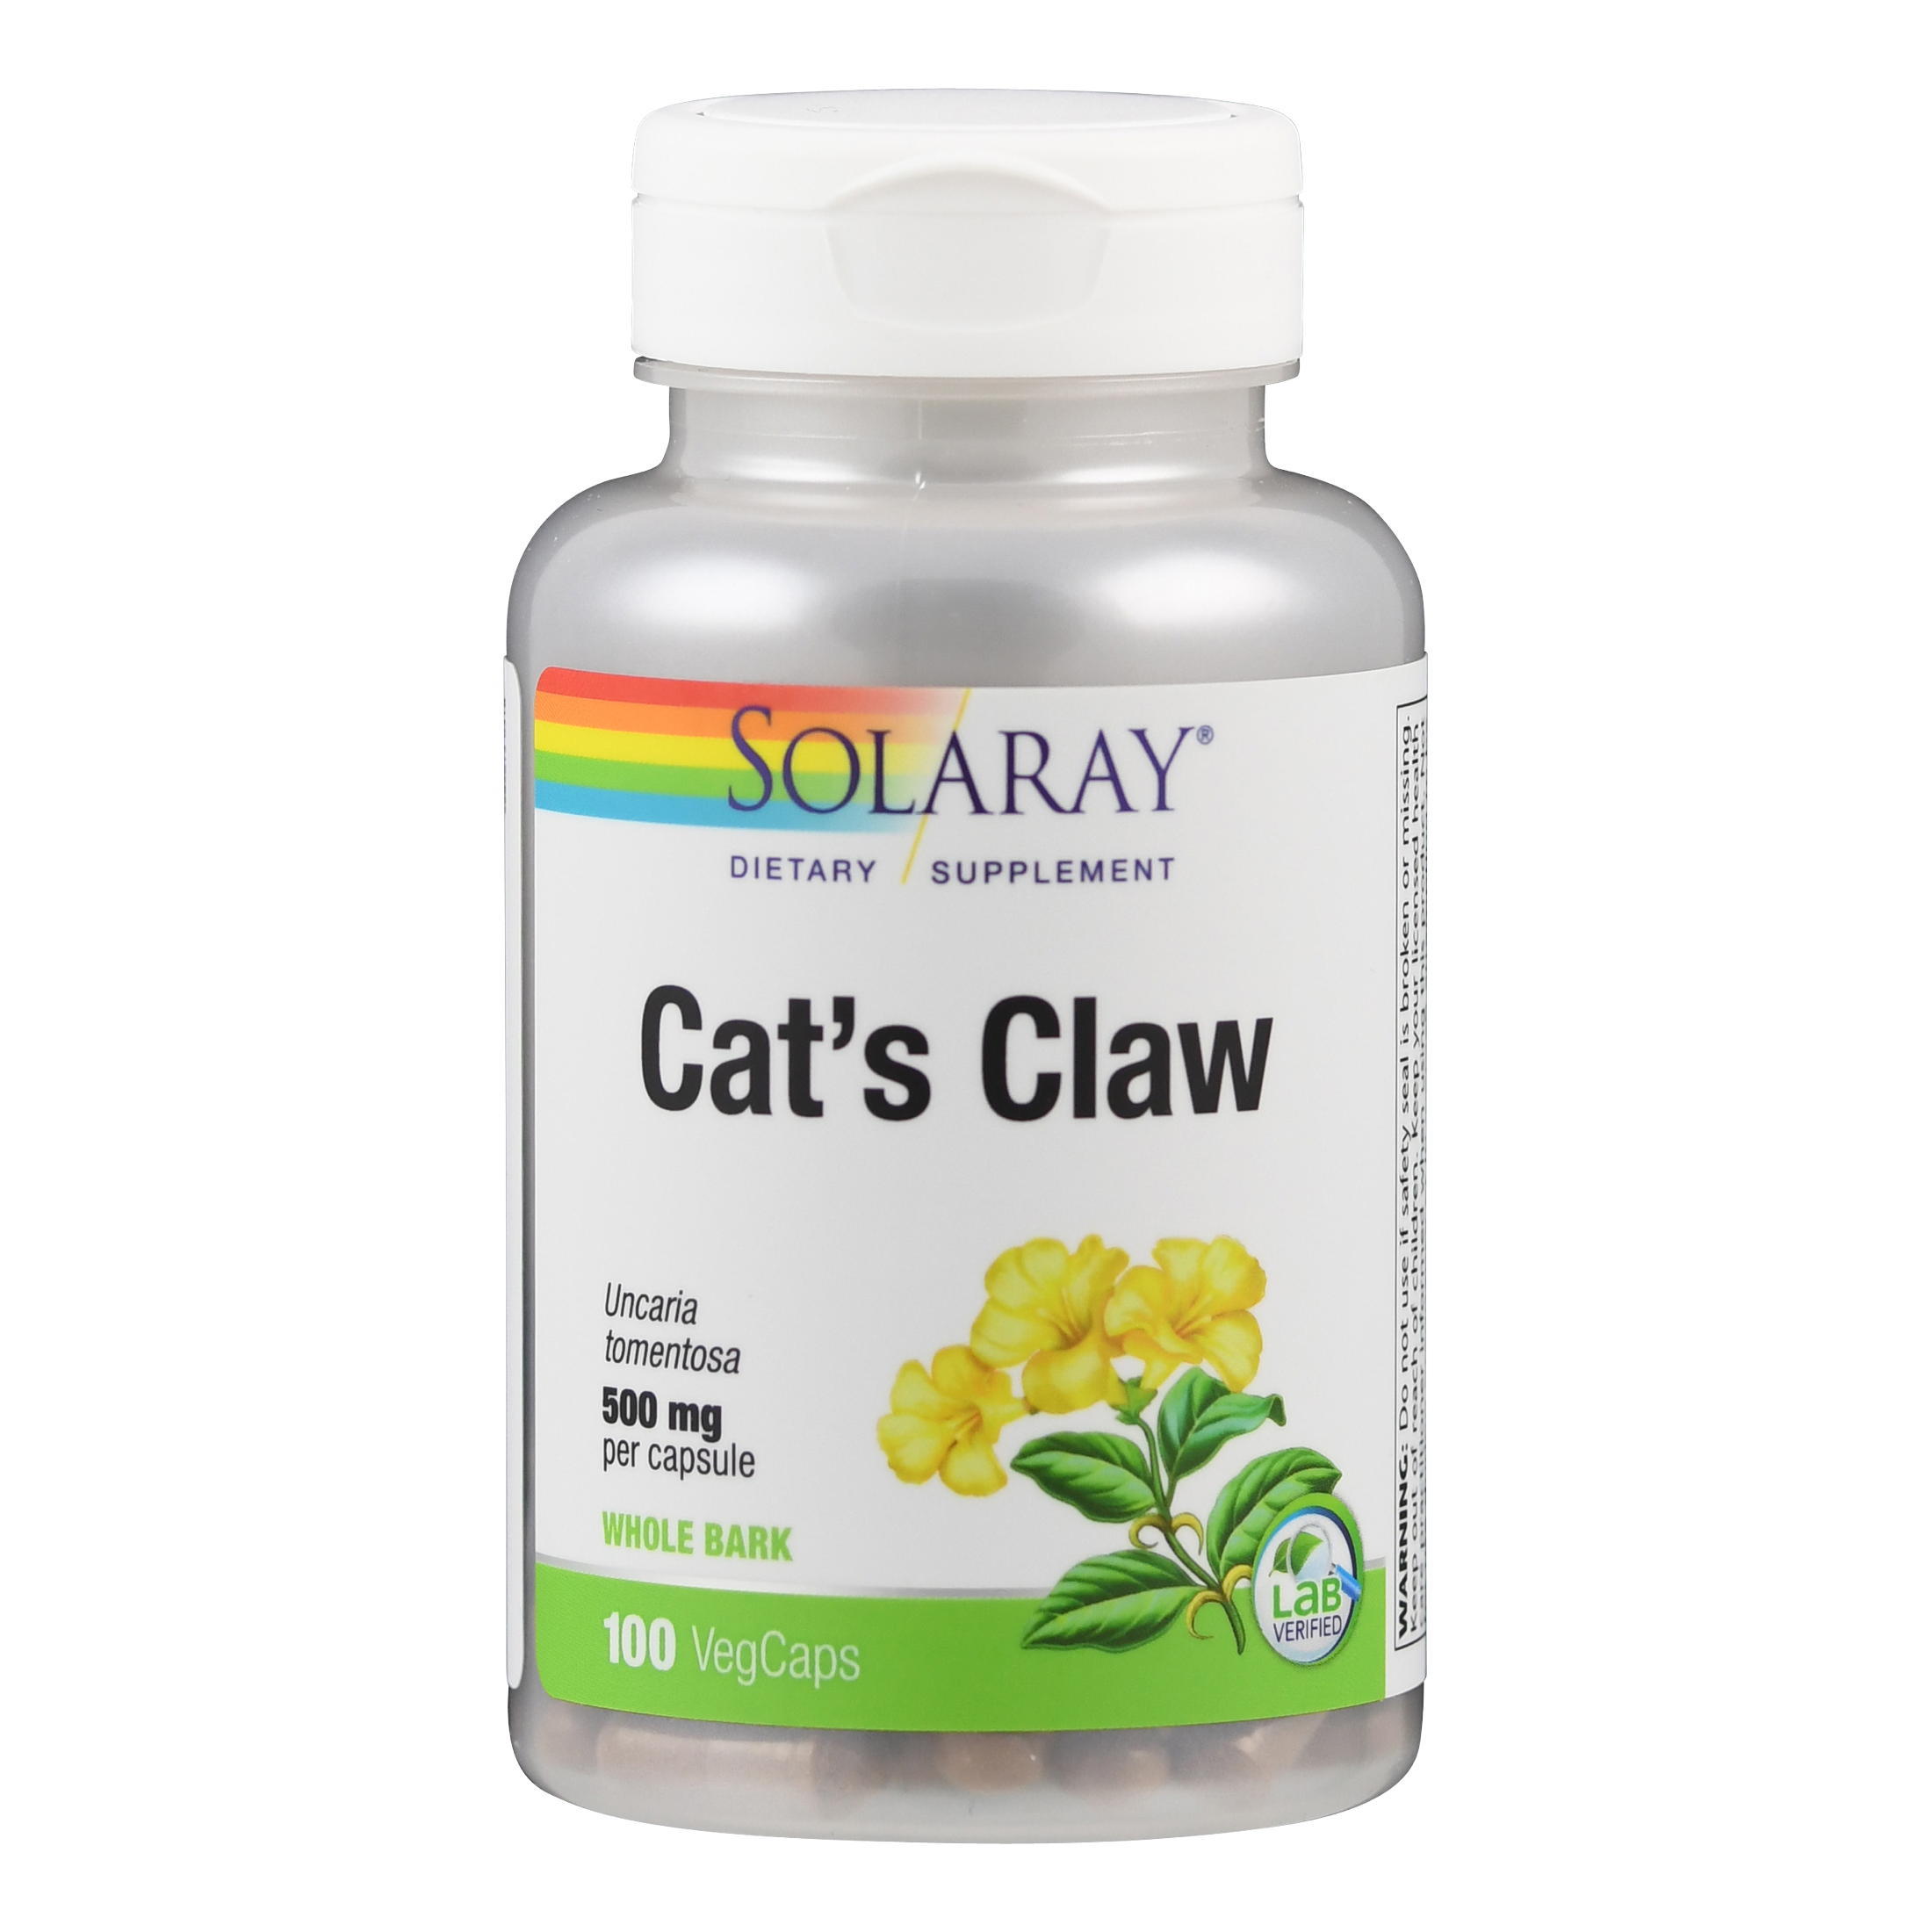 Solaray, кошачий коготь. Cat's Claw 500mg. Кошачий коготь экстракт (Ункария томентоза). Solaray, цинк, 50 мг, 100 вегетарианских капсул.